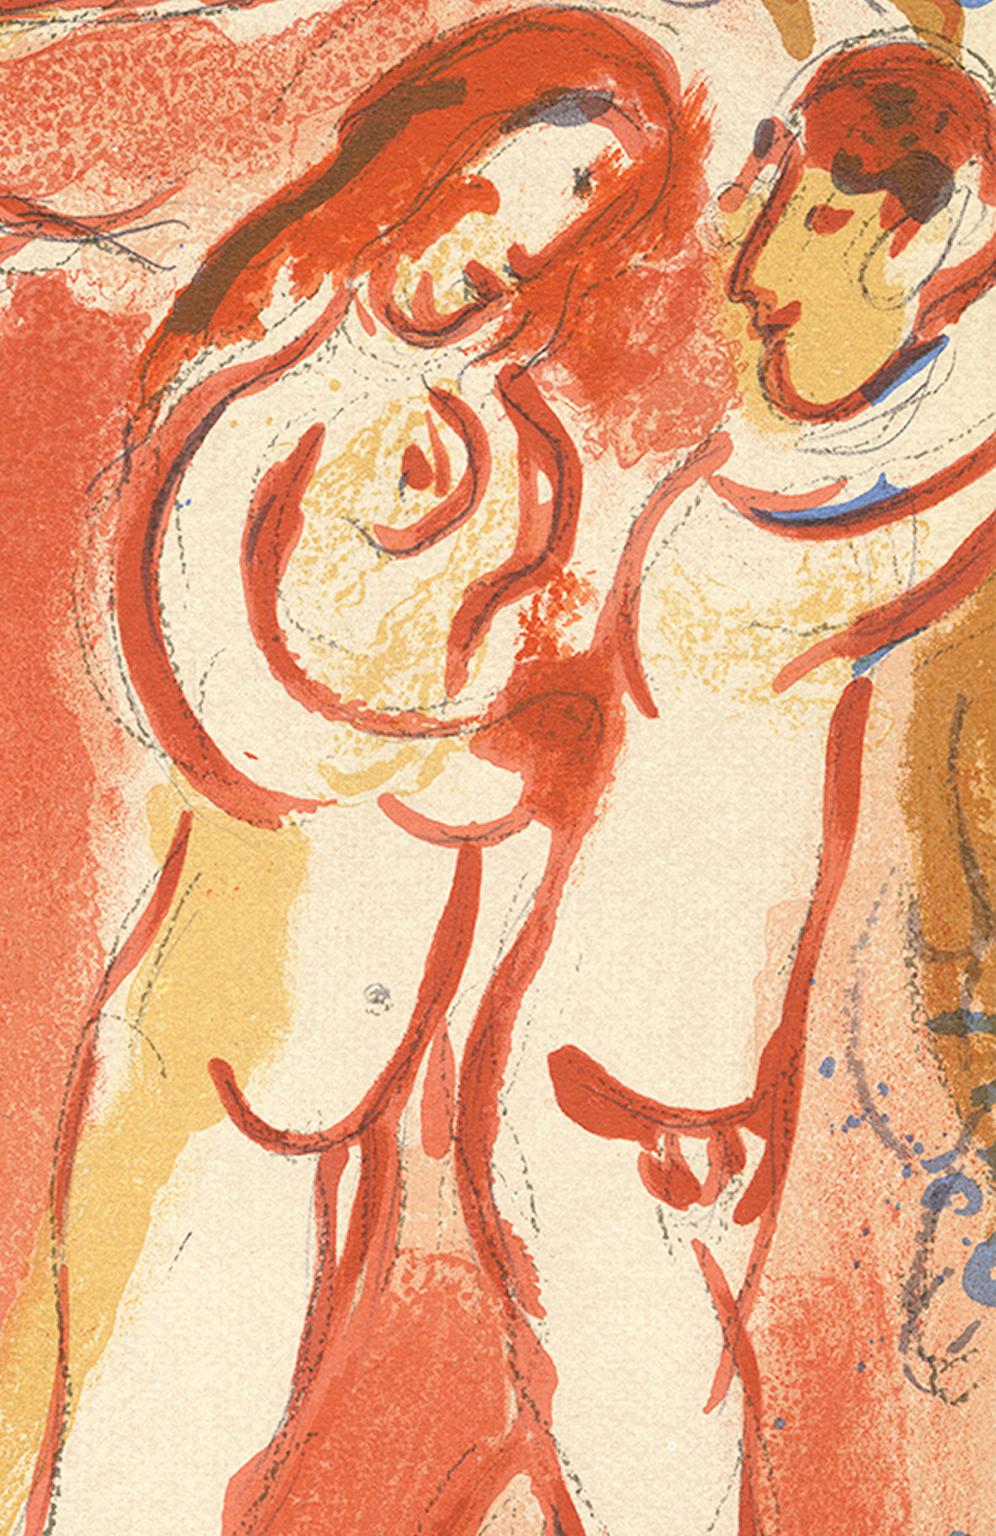 20e siècle lithographie en couleurs personnages nus rouge et orange - Print de Marc Chagall